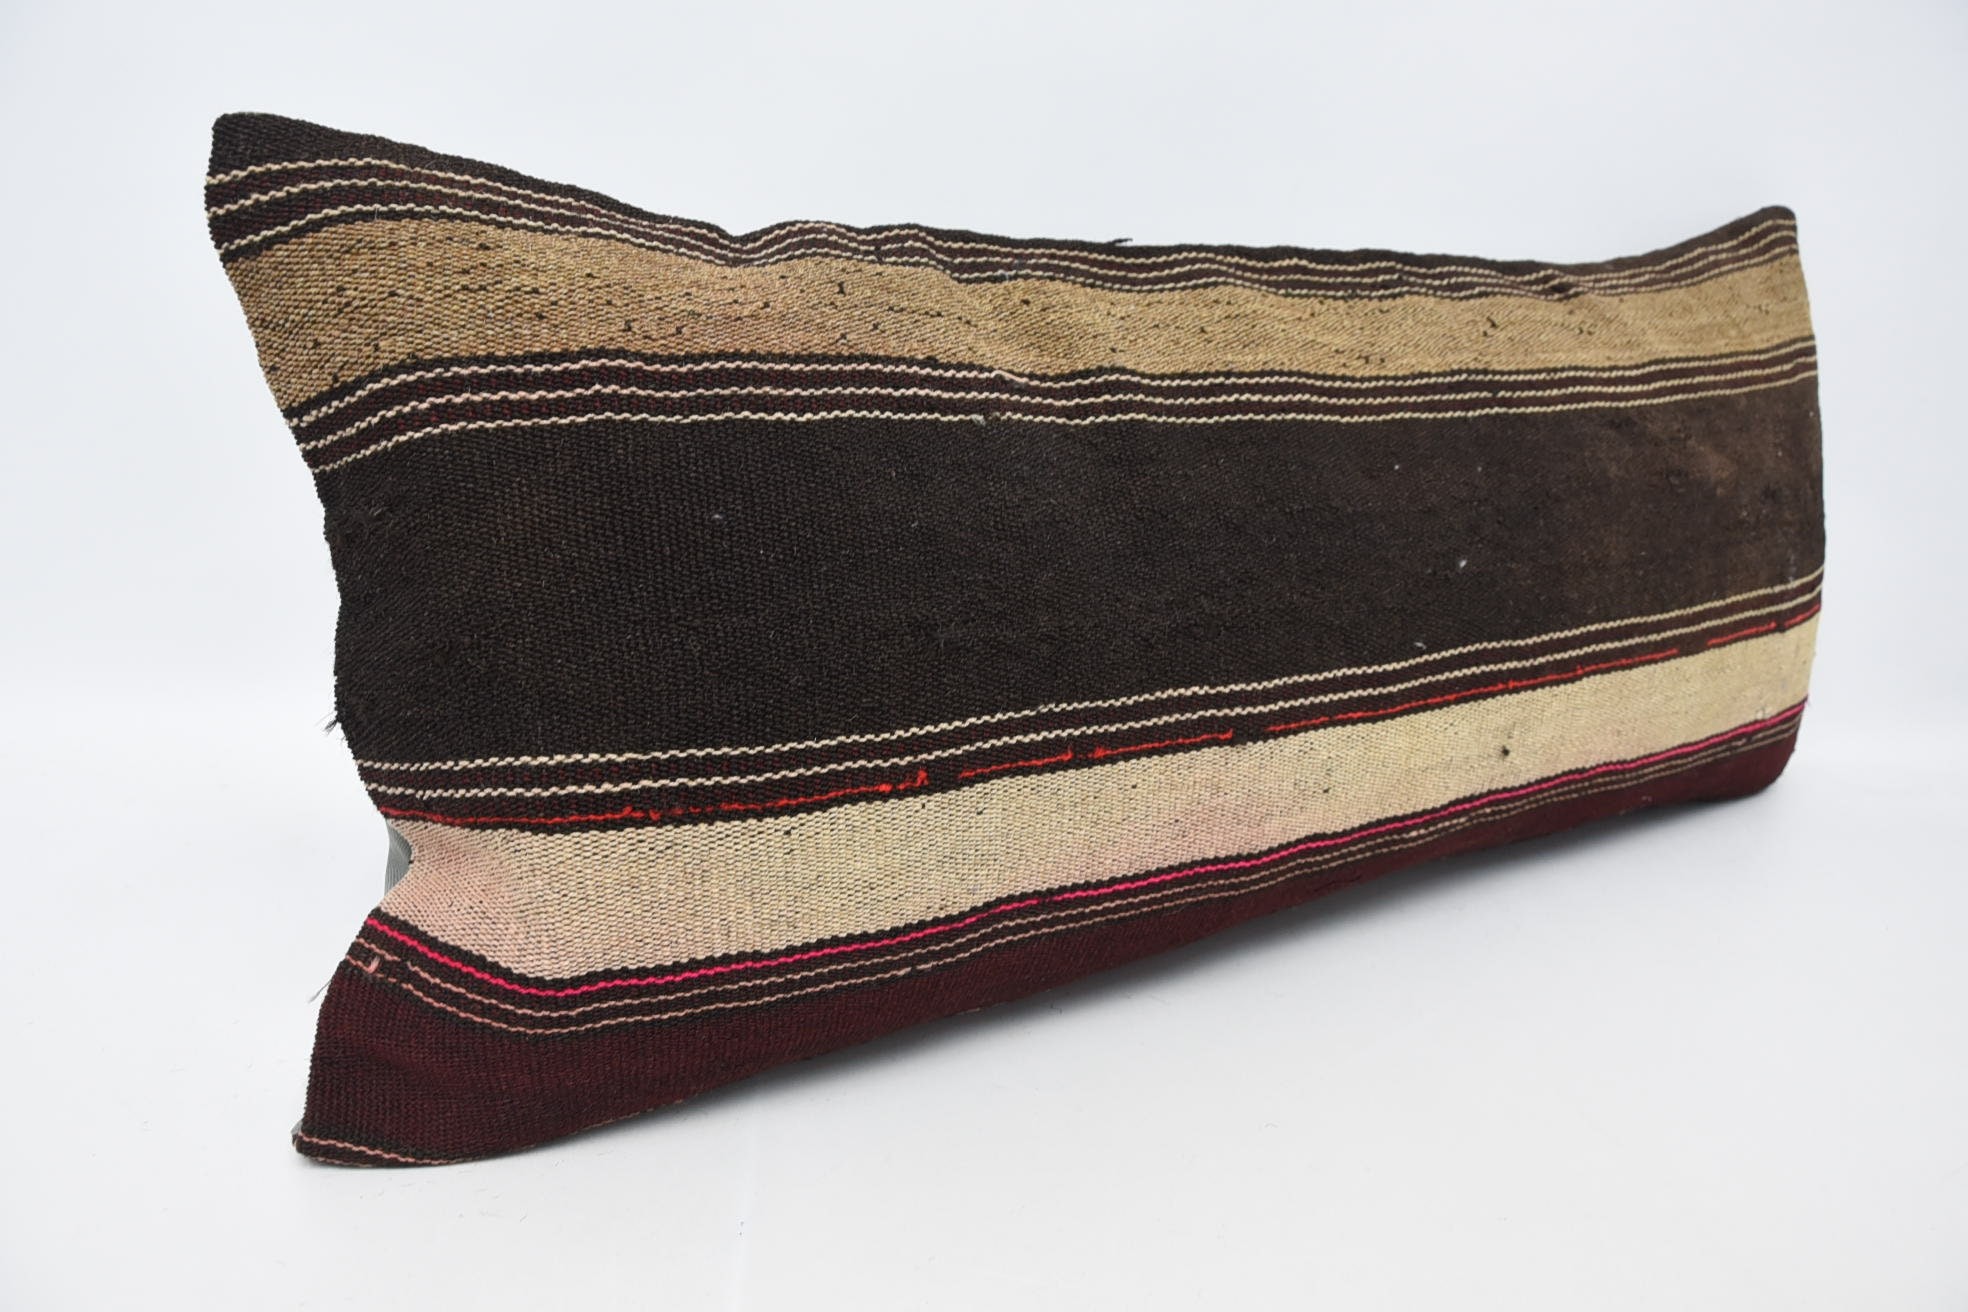 Kilim Pillow, Vintage Pillow, Vintage Kilim Pillow, Ethnic Pillow Case, 16"x36" Brown Pillow Sham, Ottoman Pillow Sham